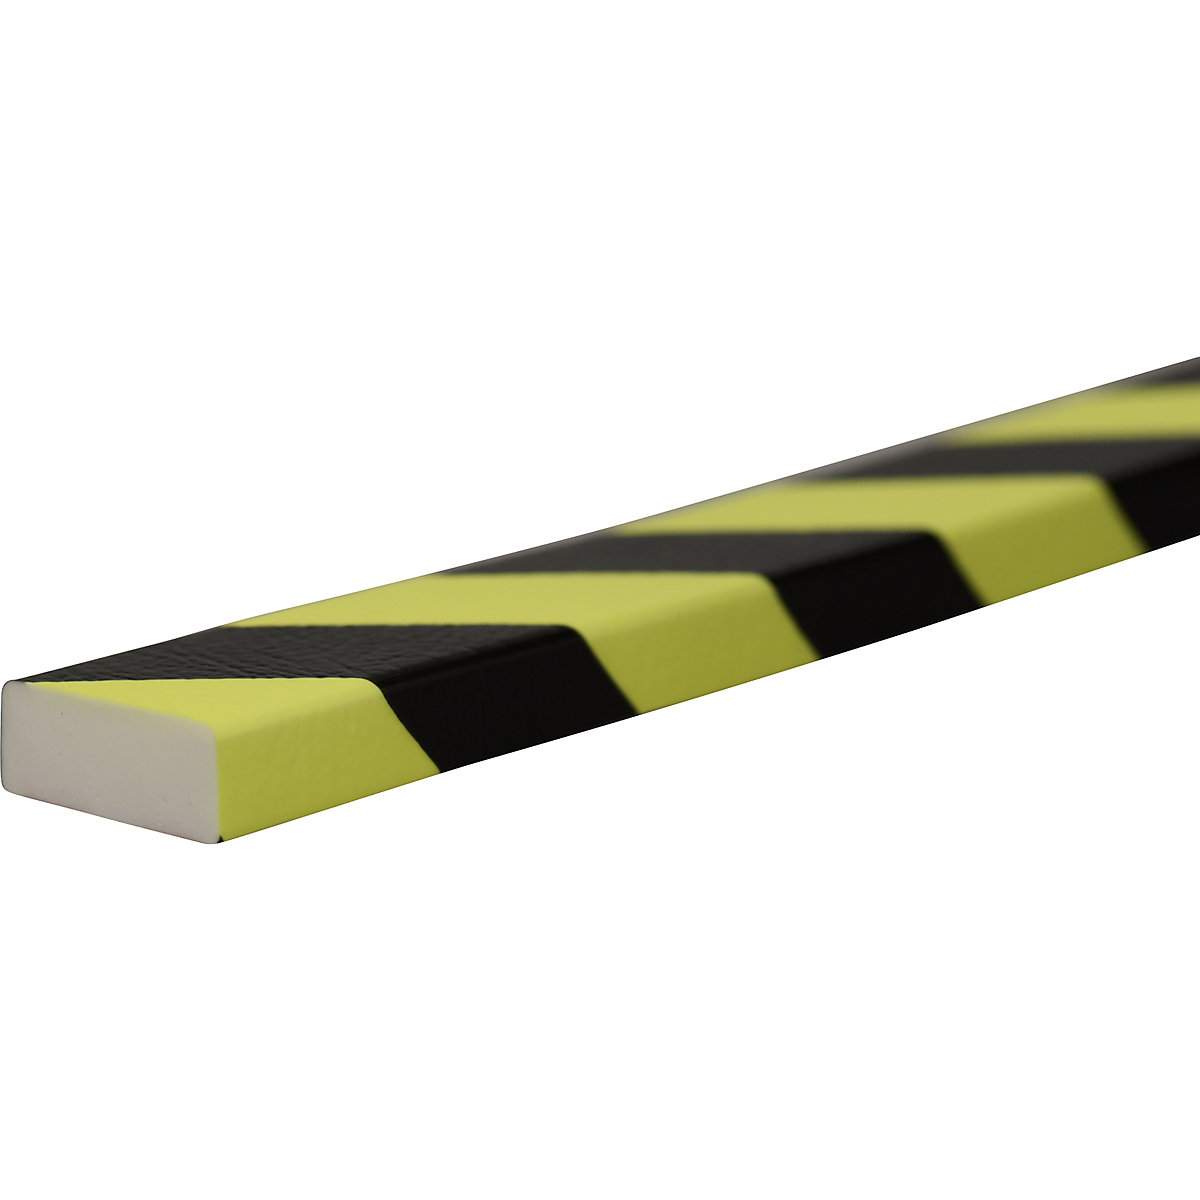 Proteção de superfícies Knuffi® – SHG, tipo D, unidade de 1 m, preto/fluorescente-22